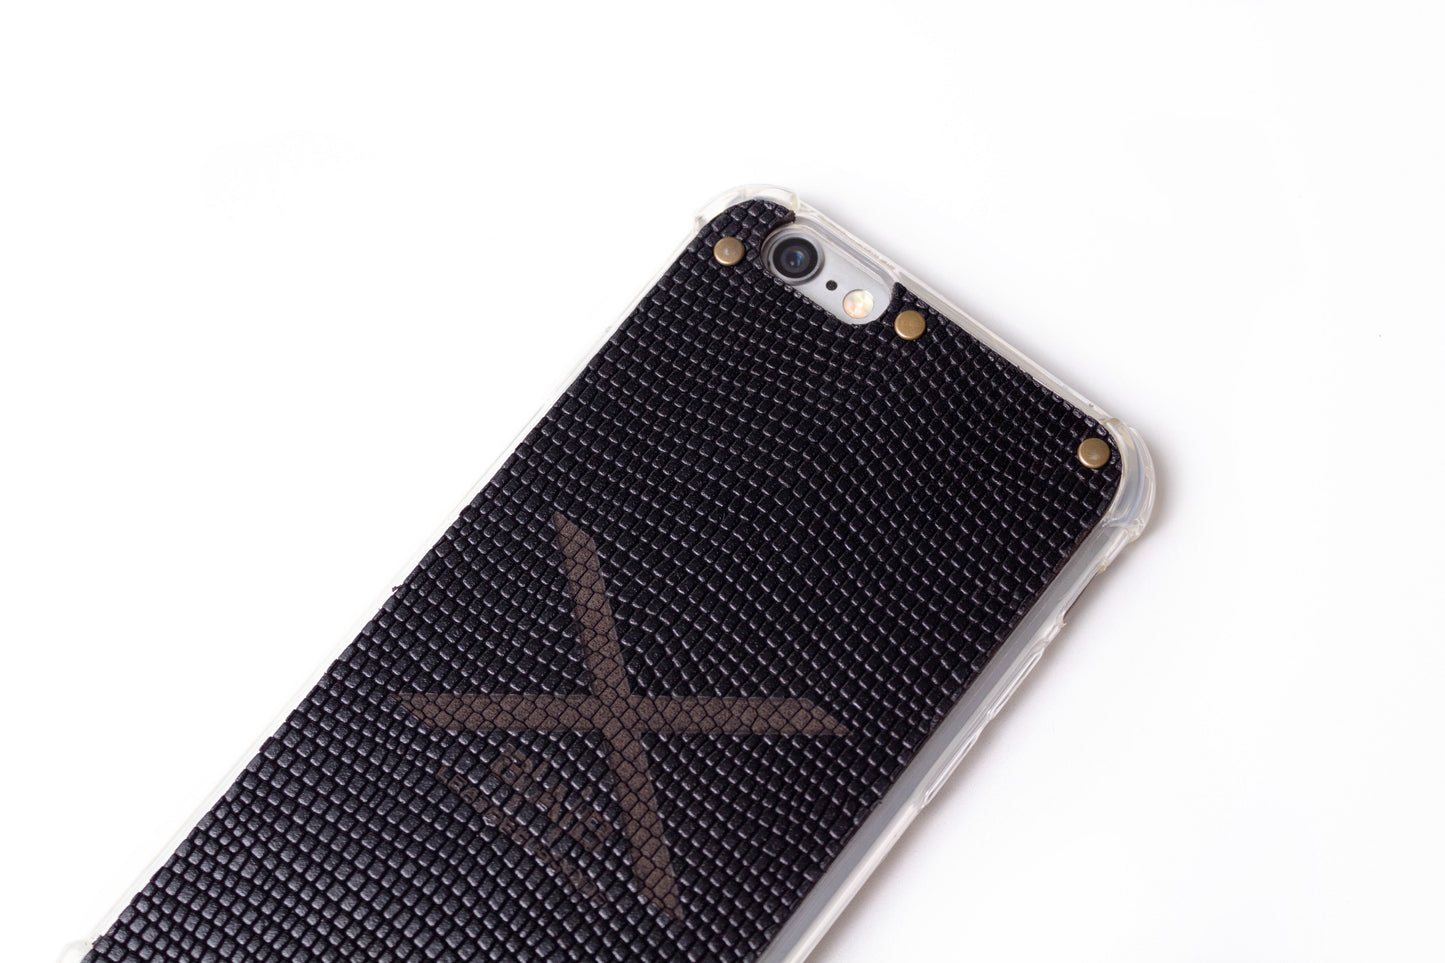 Funda para iPhone de Cuero Genuino Serpiente Negra Texturizado cortado y grabado con láser, 5 Remaches de Bronce.- F36